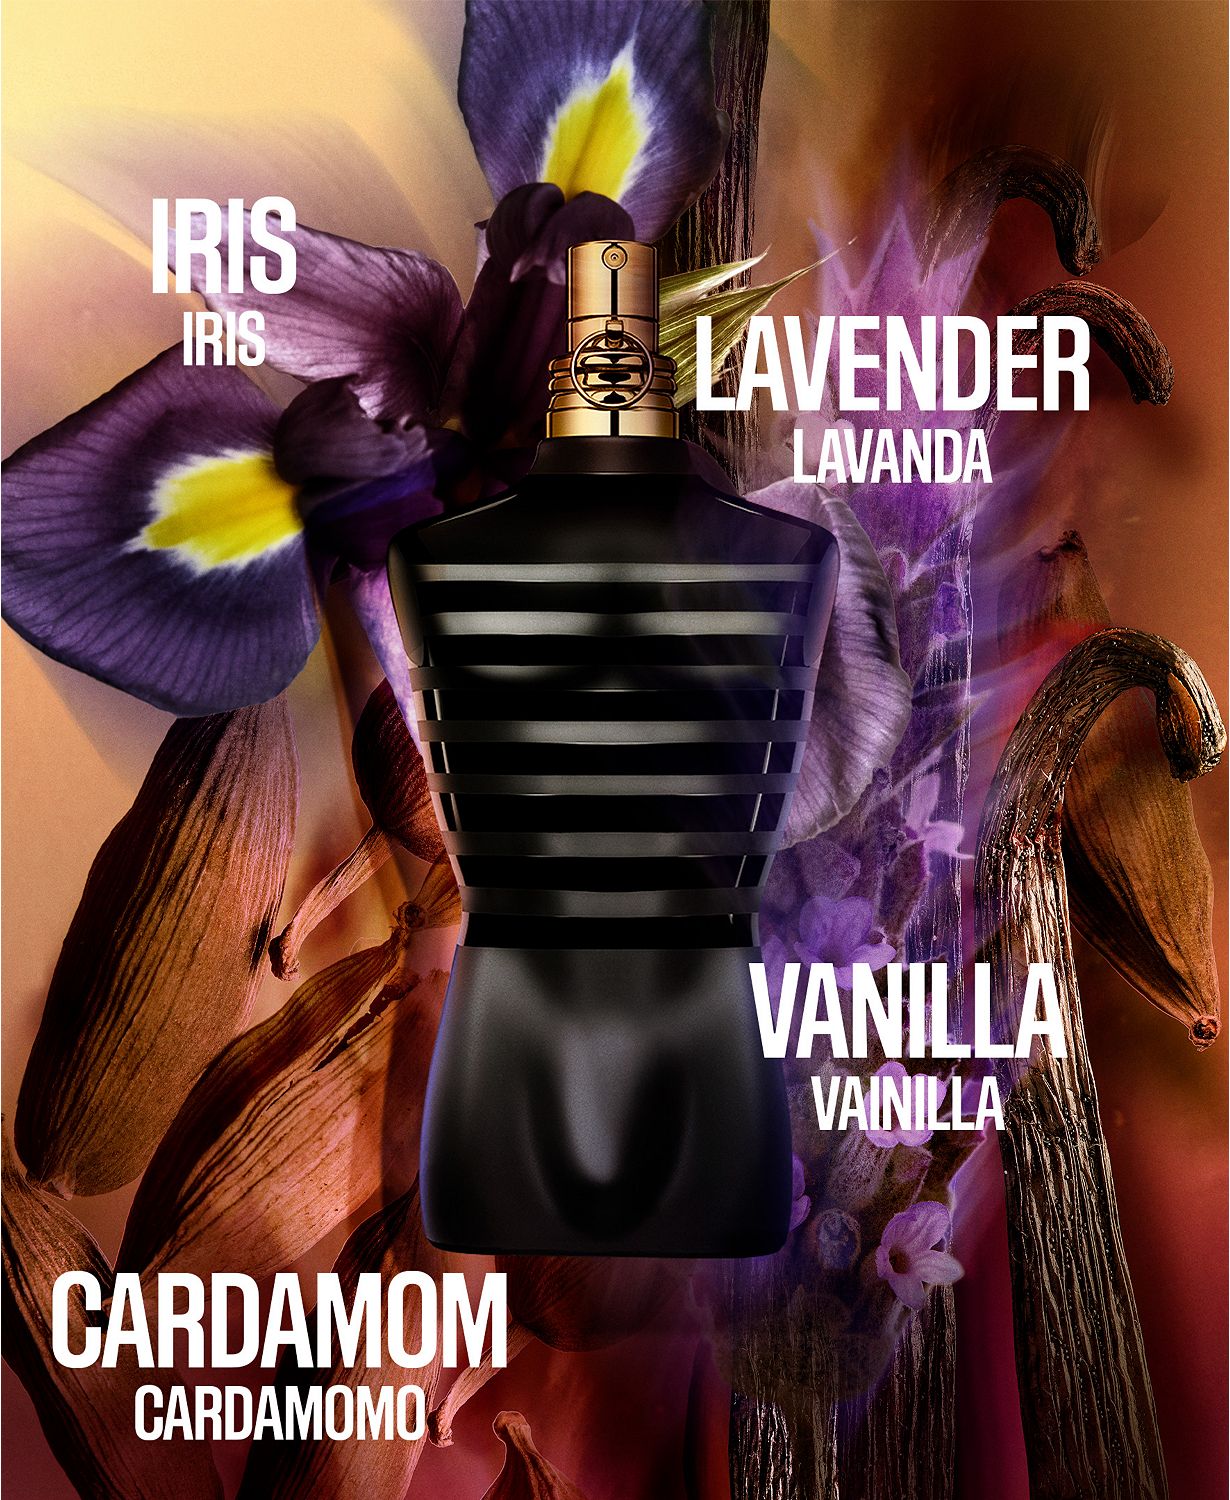 Men's Le Male Le Parfum Eau de Parfum Spray, 6.7 oz.